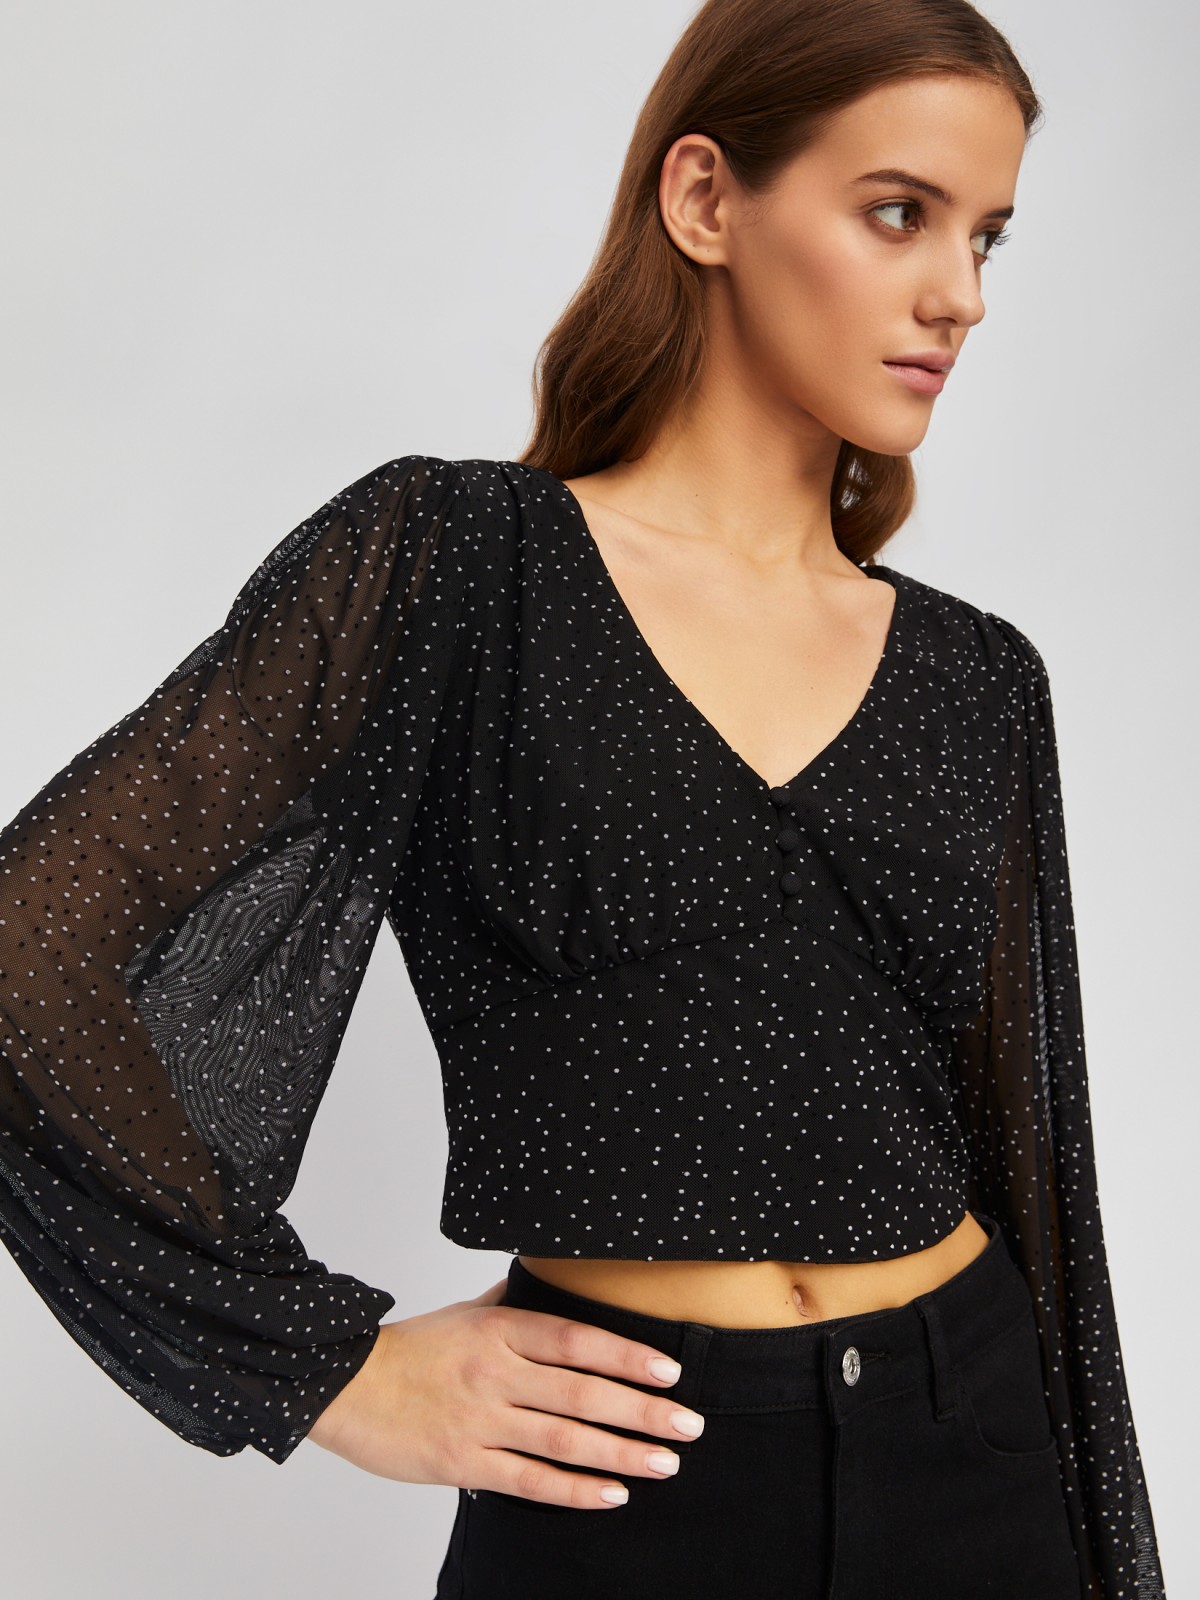 Укороченный топ-блузка с вырезом и принтом в горошек zolla 024111159261, цвет черный, размер XS - фото 3